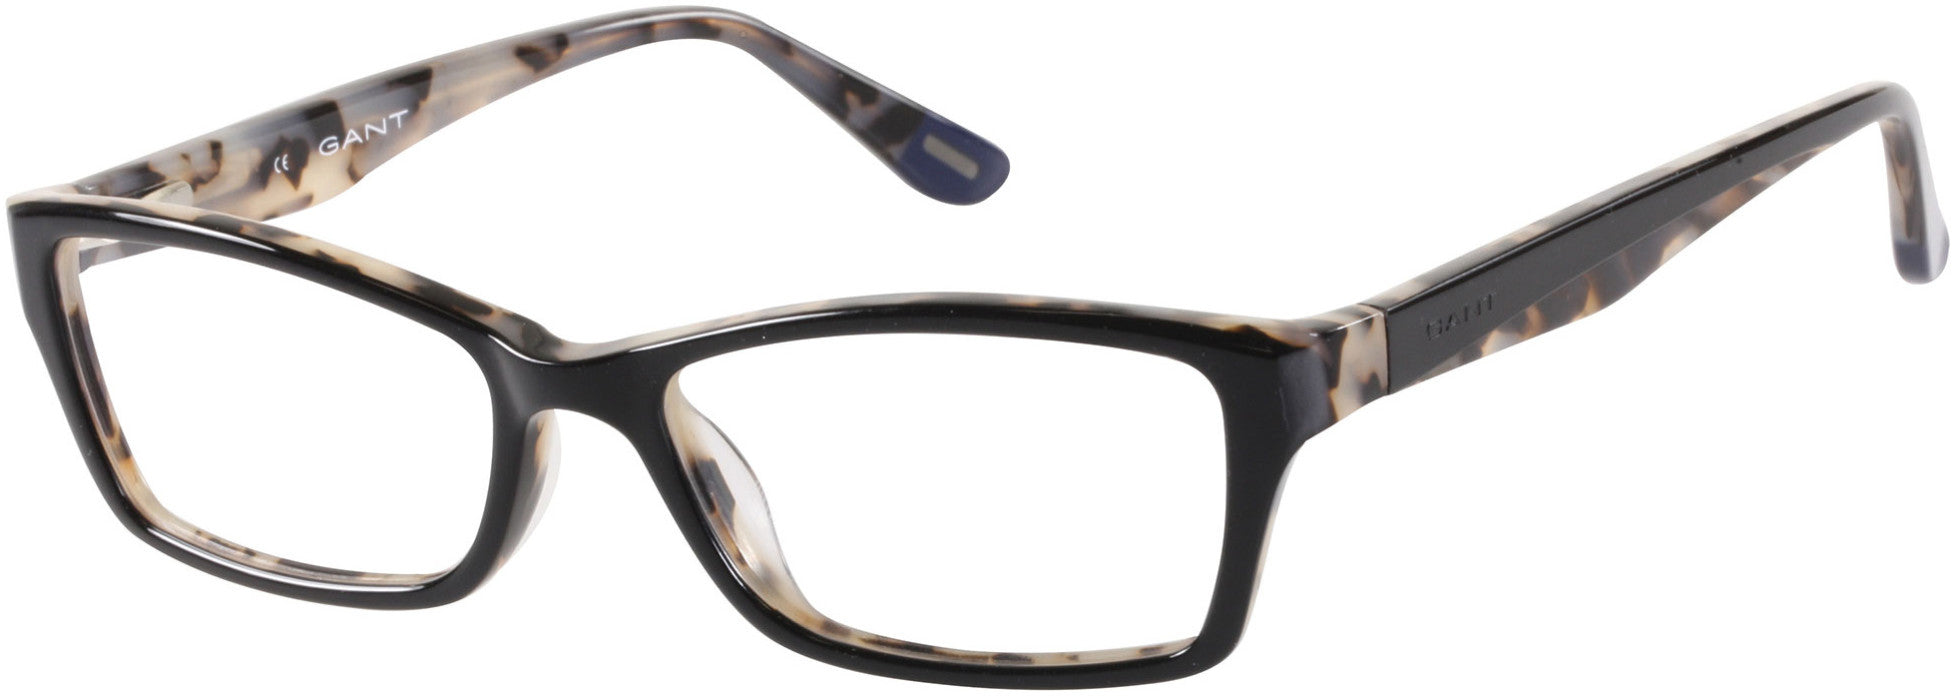 Gant GA0102 Eyeglasses D36-D36 - Black/ecalle